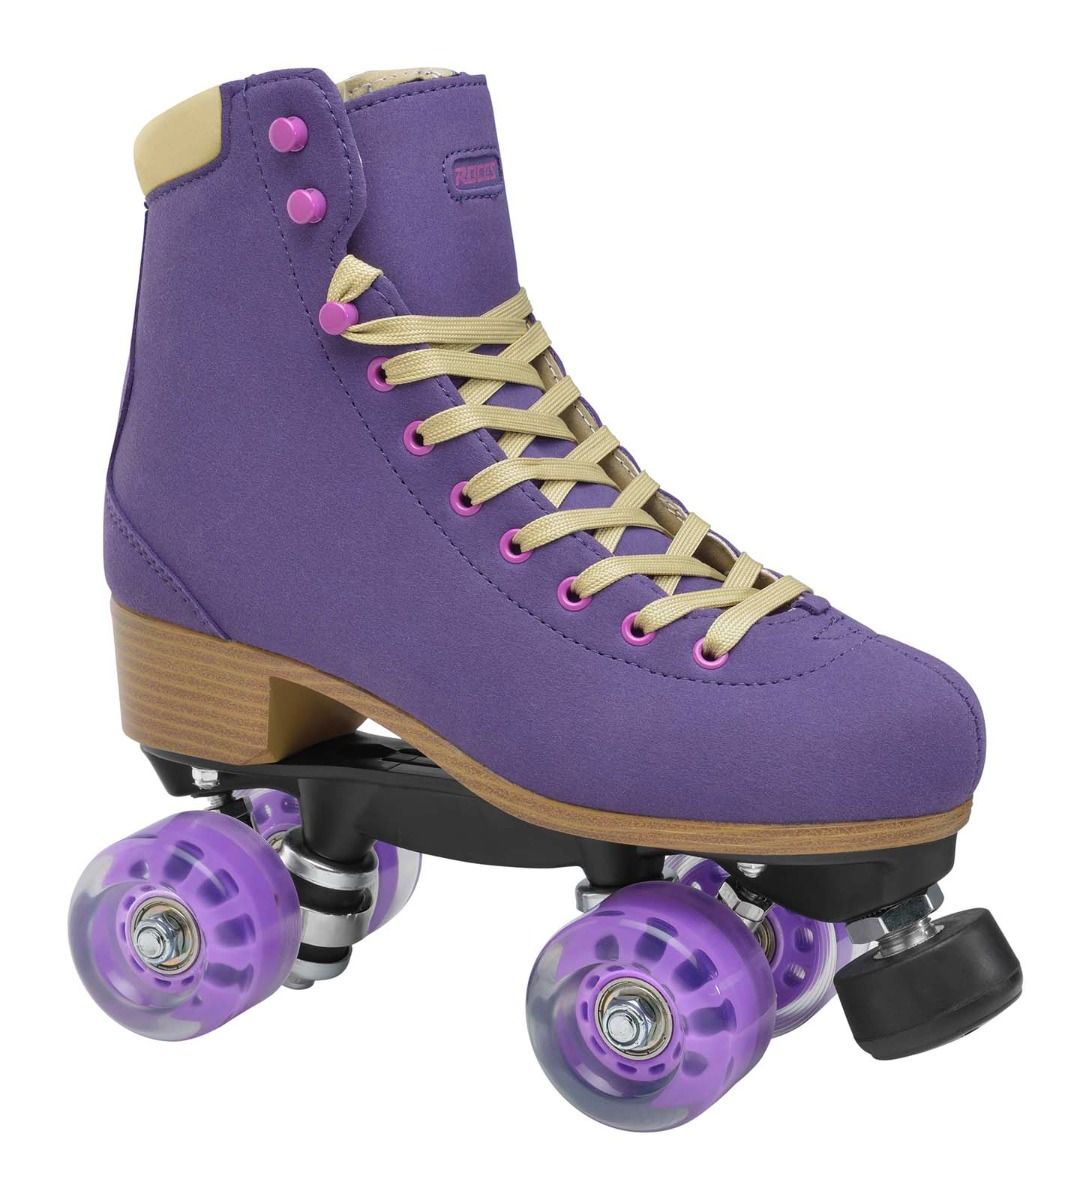 Roces Piper Purple Roller Skates, Roller Skates Under $80, Intuition Skate Shop